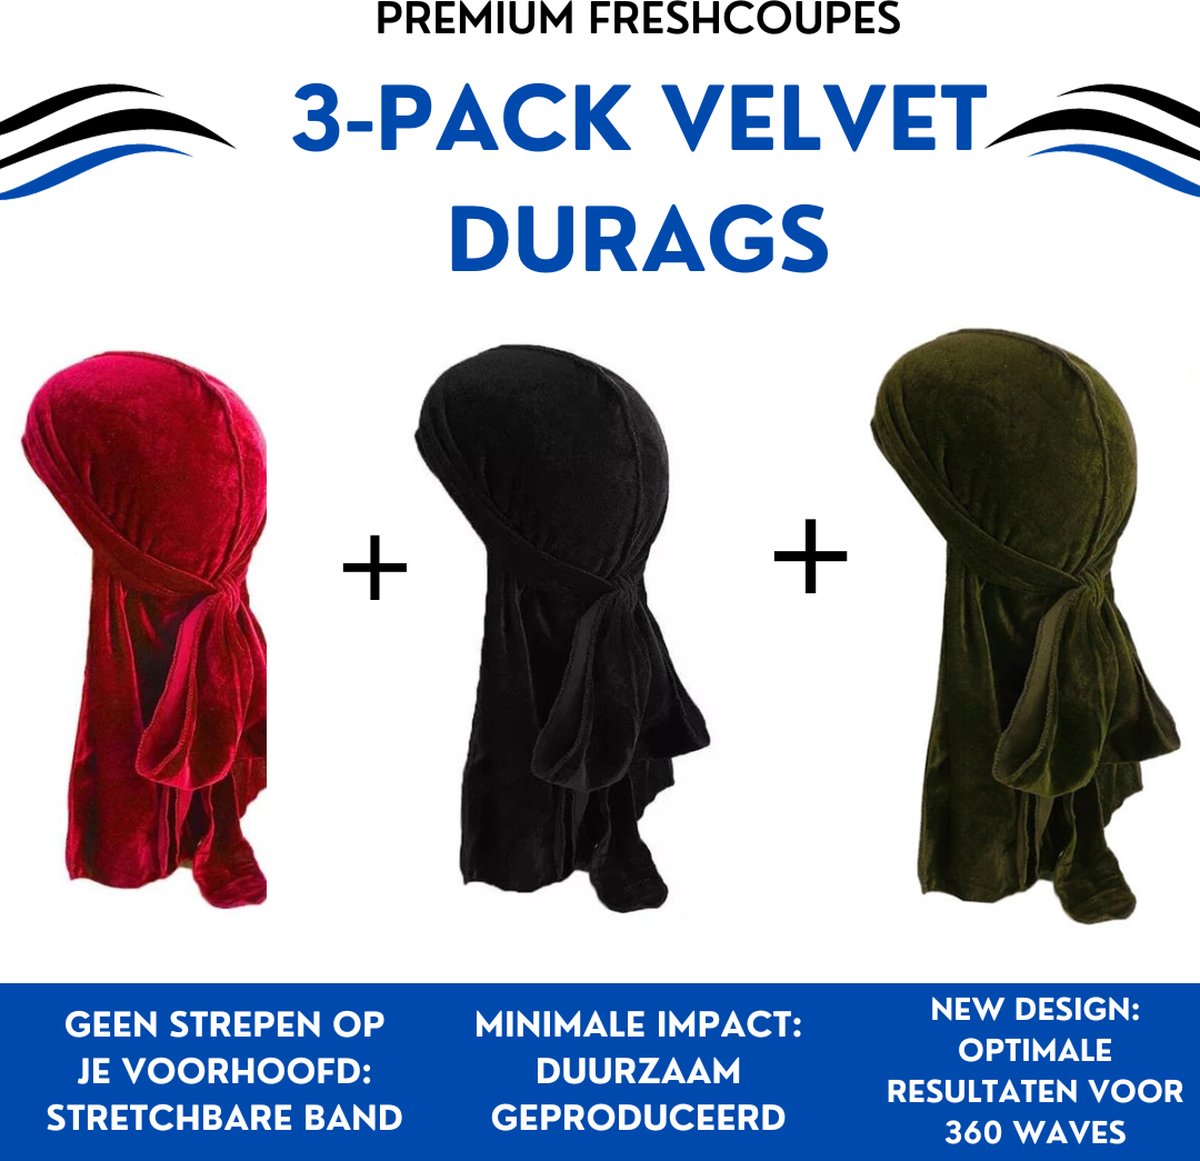 FRESHCOUPES Velvet Durag 3PACK - Rood/Zwart/Groen